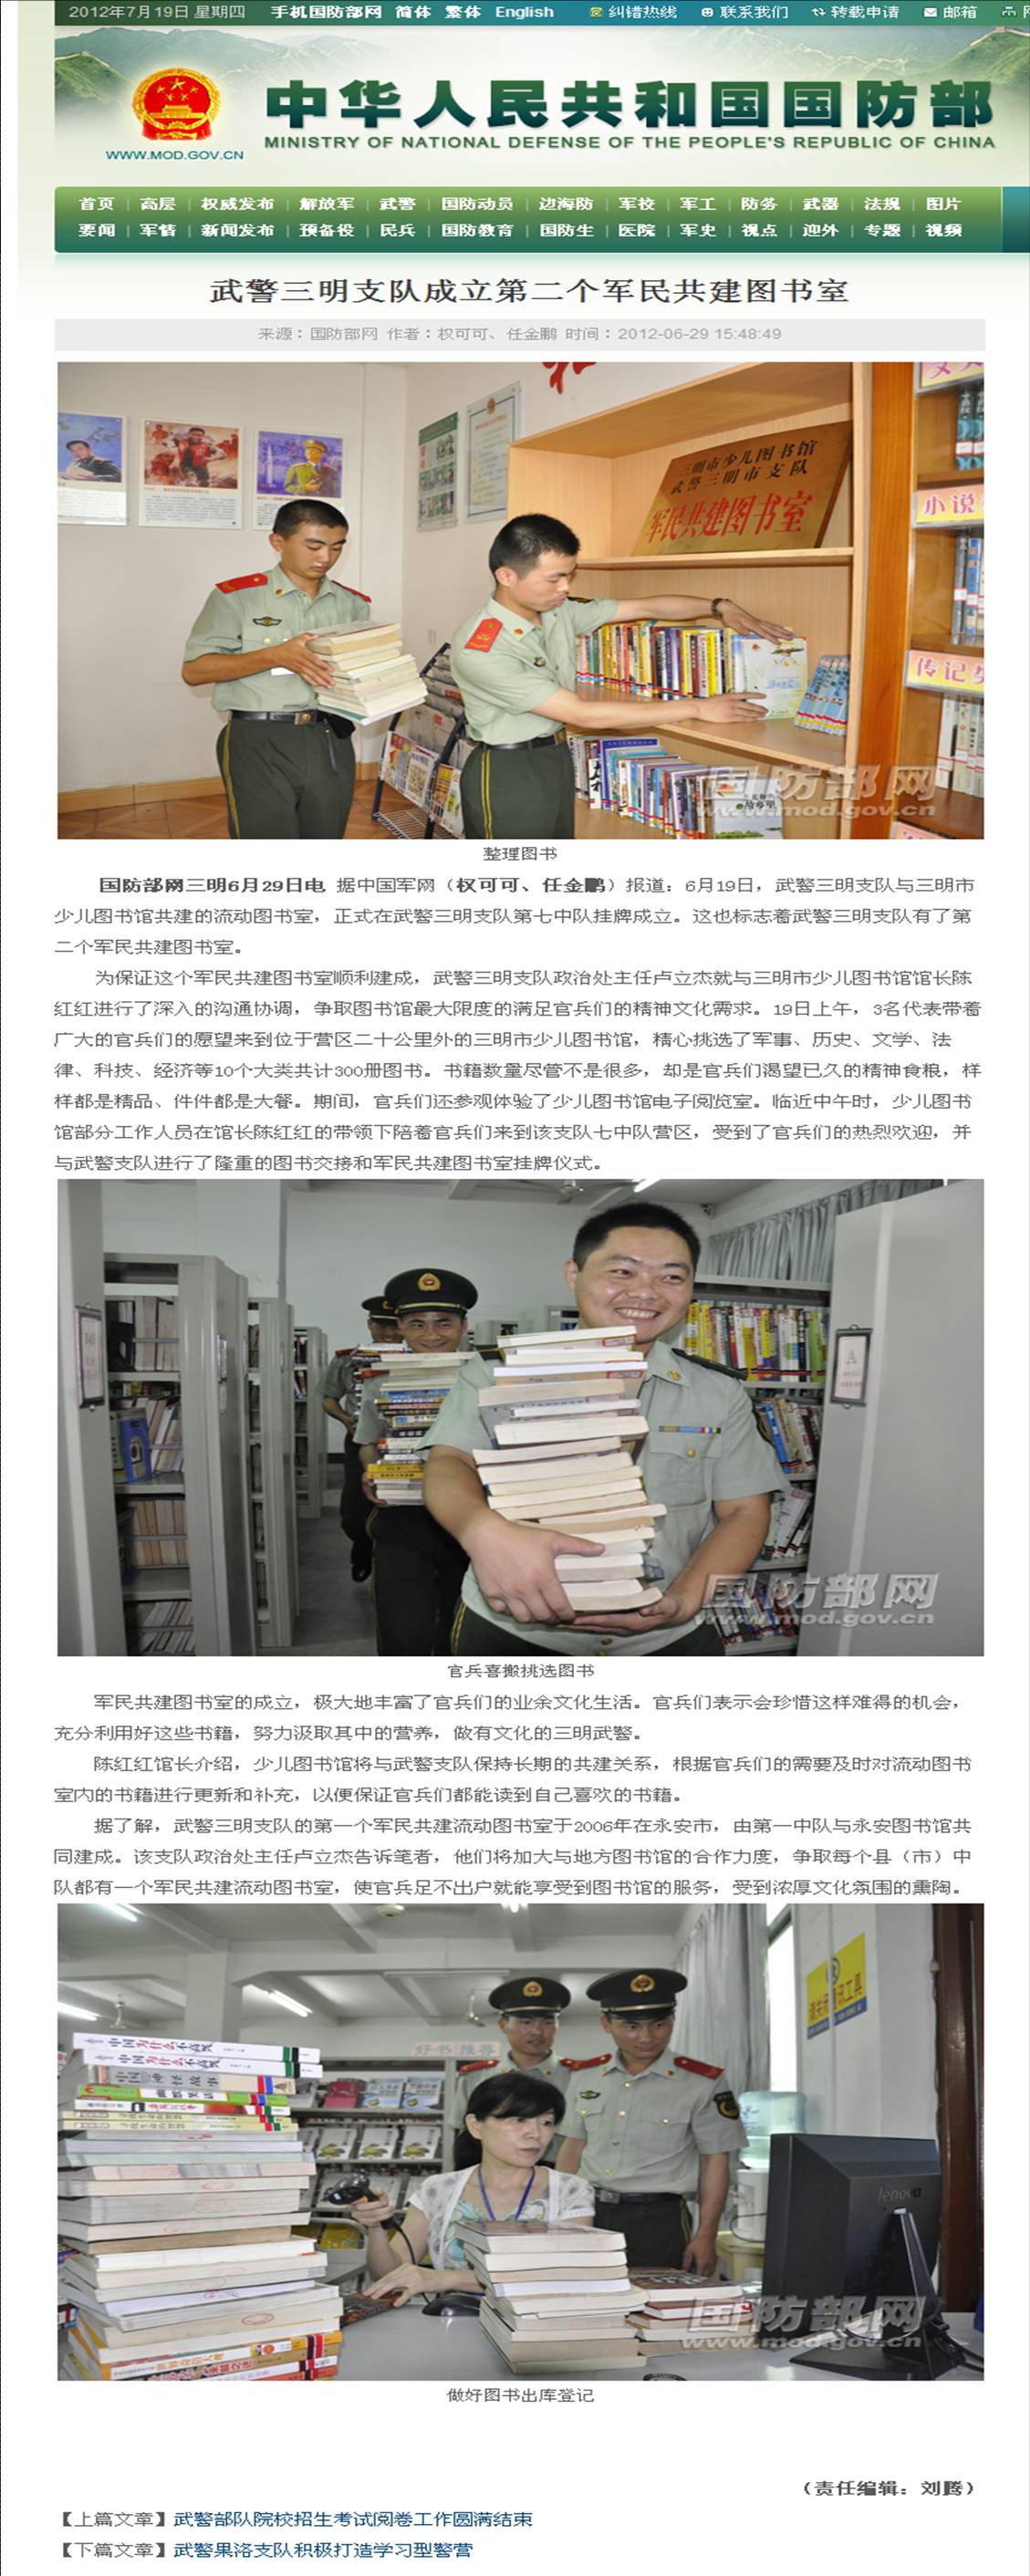 20120629《中华人民共和国国防部网 》.jpg